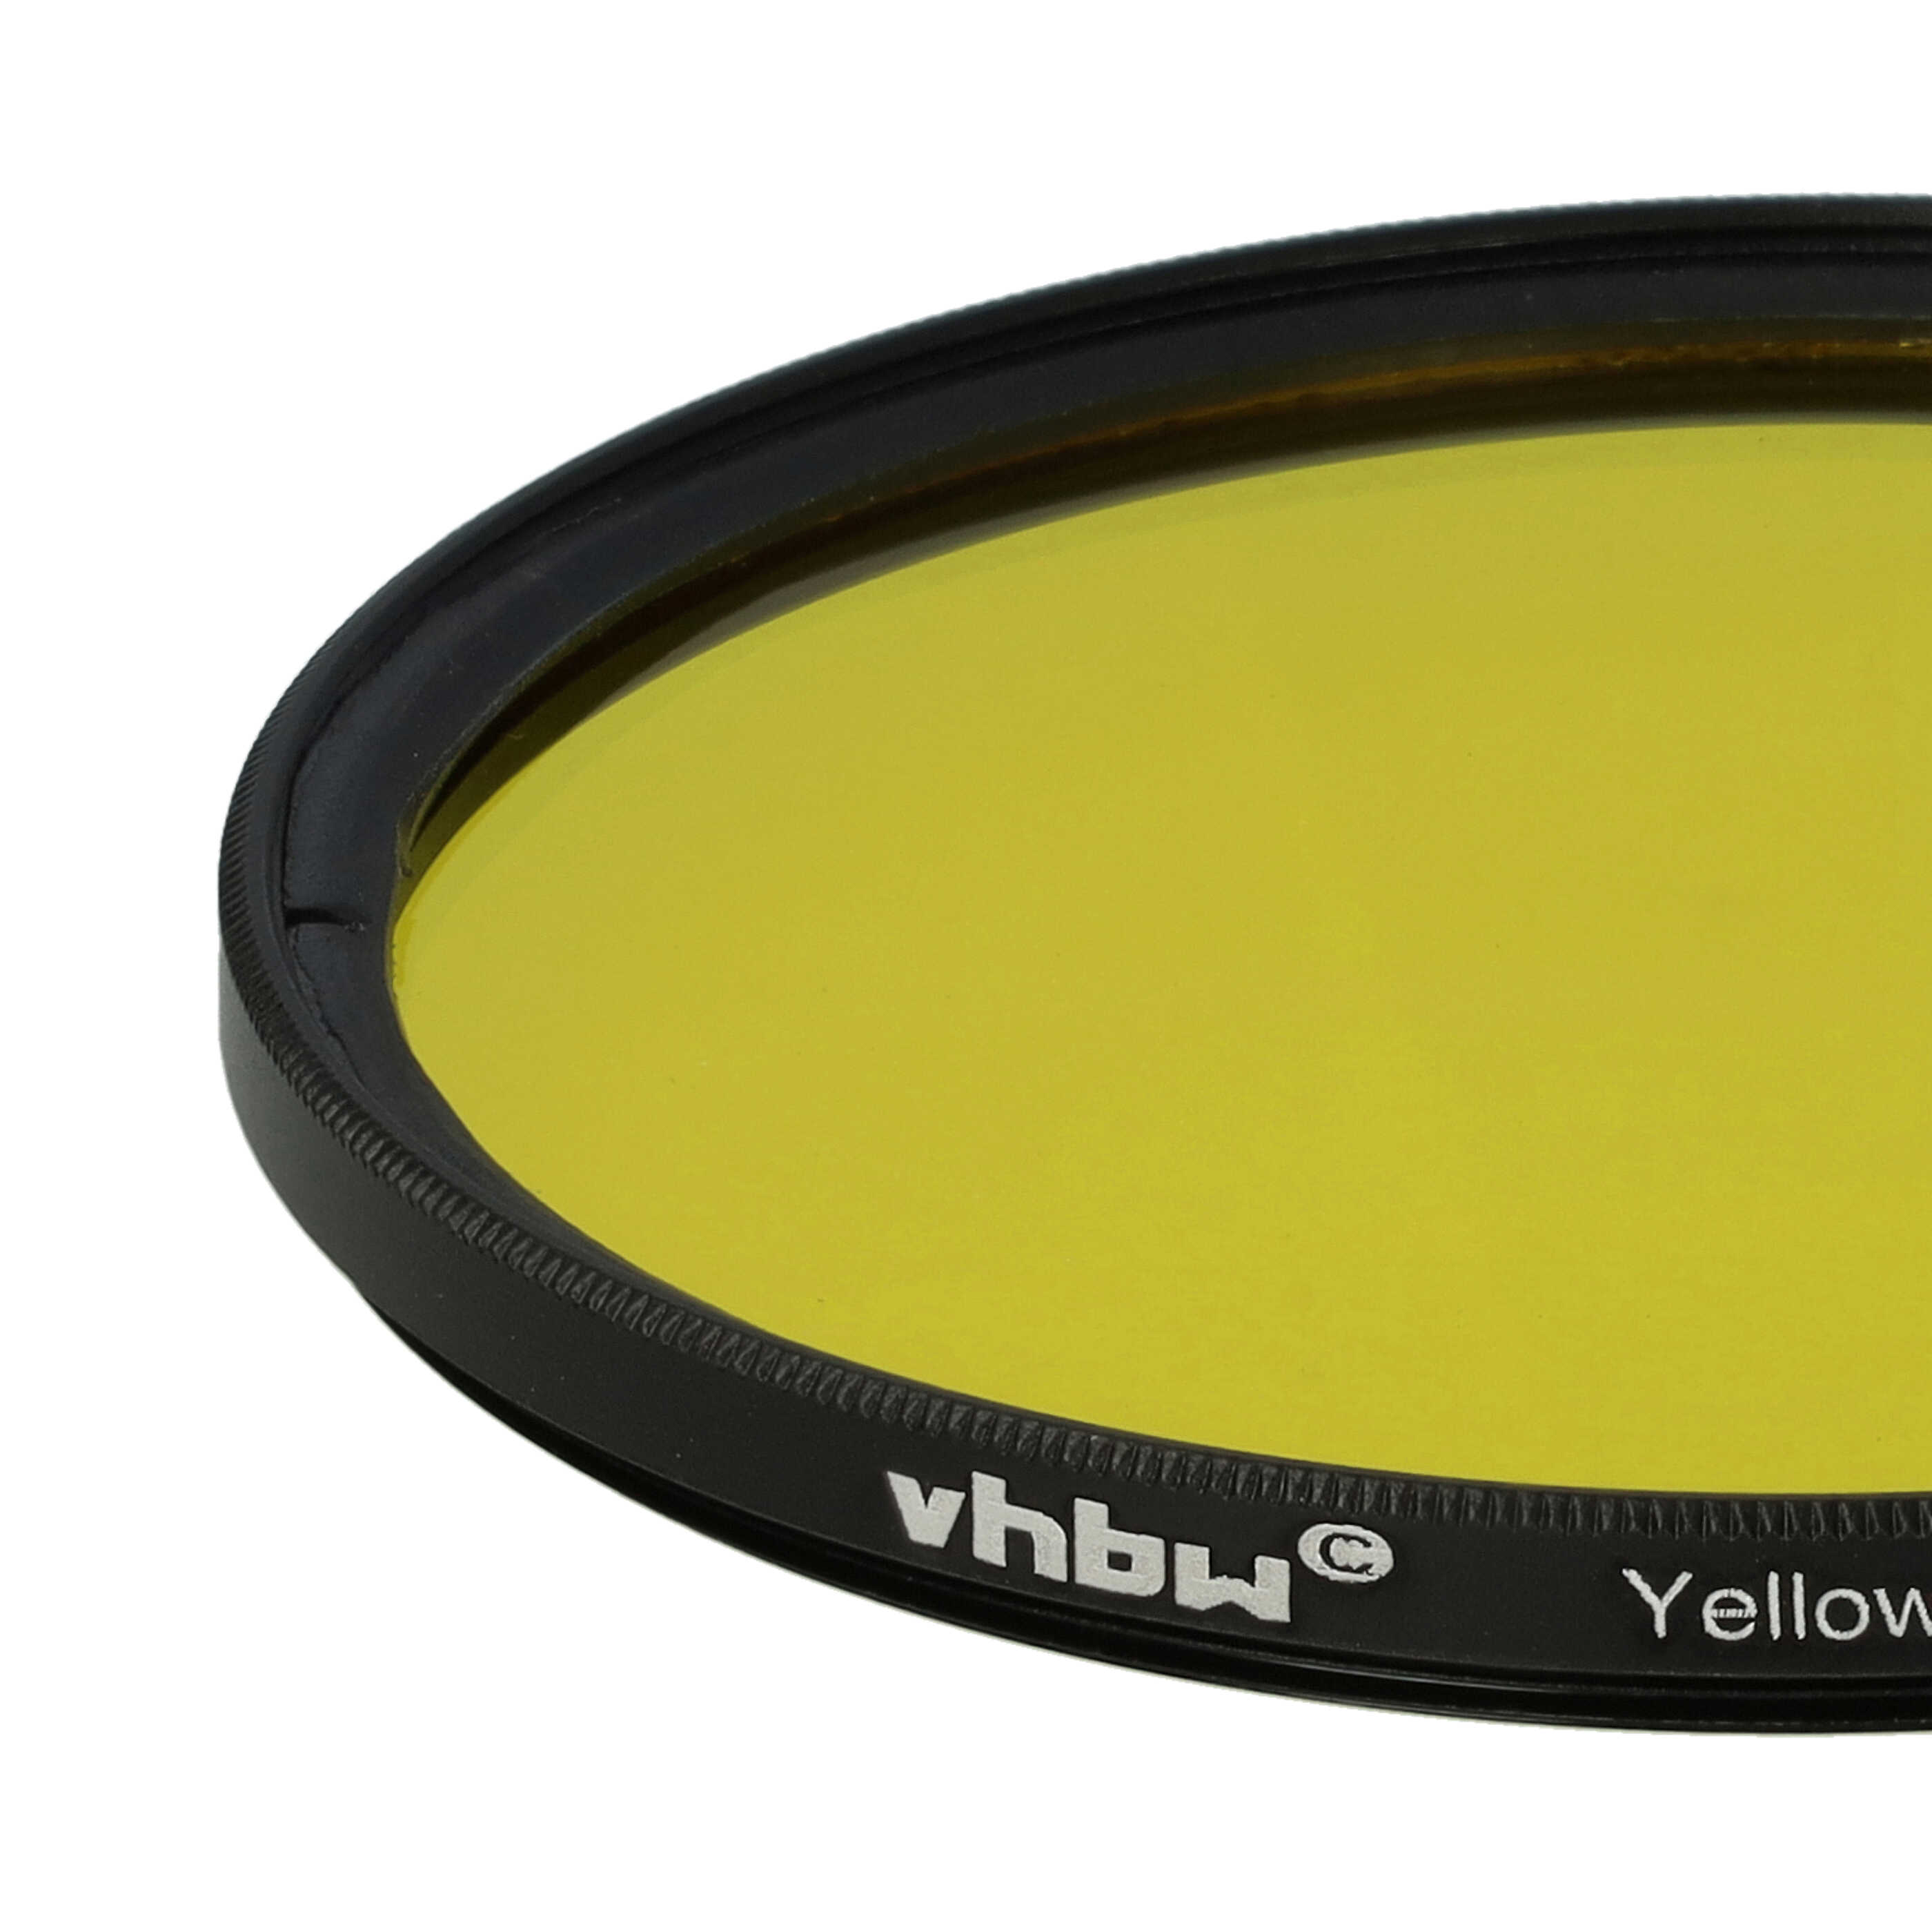 Filtro colorato per obiettivi fotocamera con filettatura da 72 mm - filtro giallo